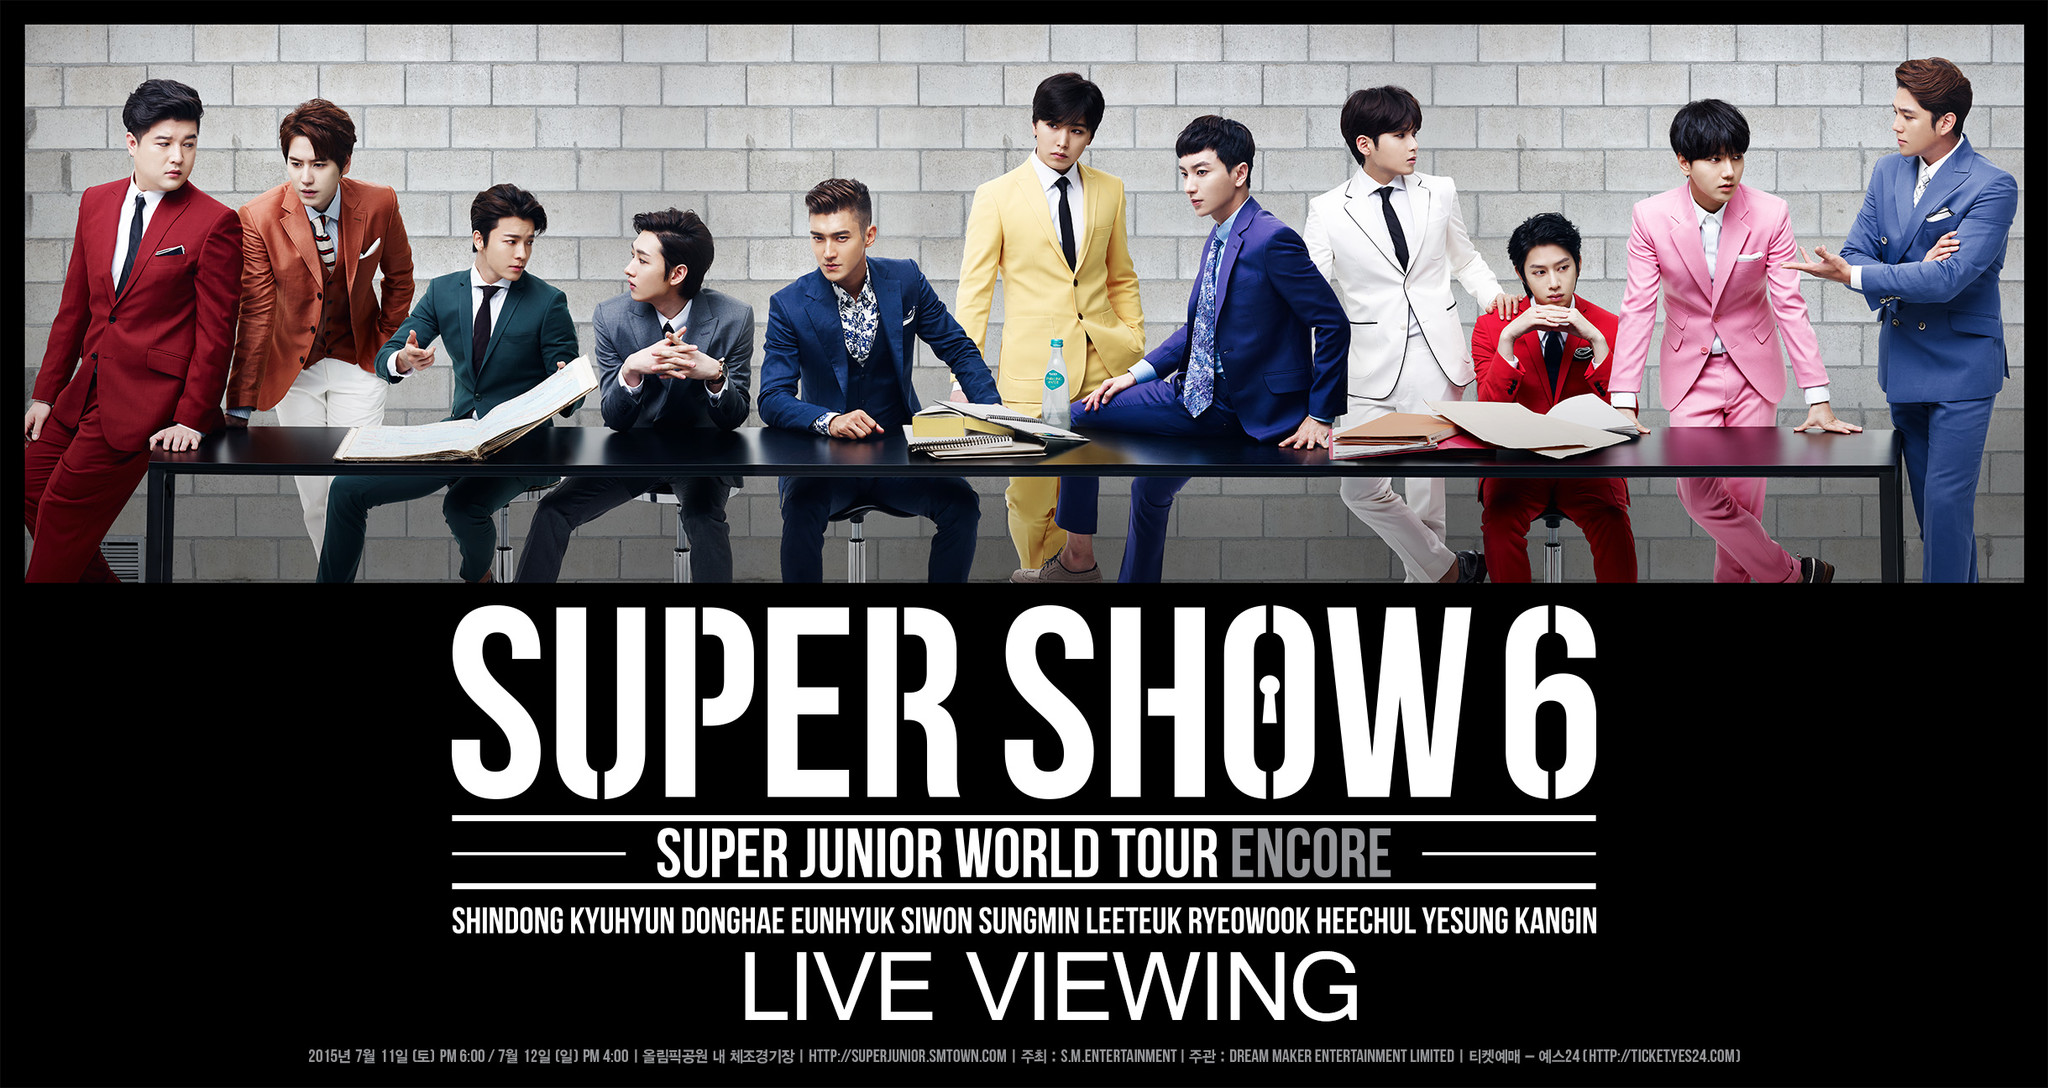 SUPER JUNIOR WORLD TOUR “SUPER SHOW 6 ENCORE”ライブ・ビューイング ...